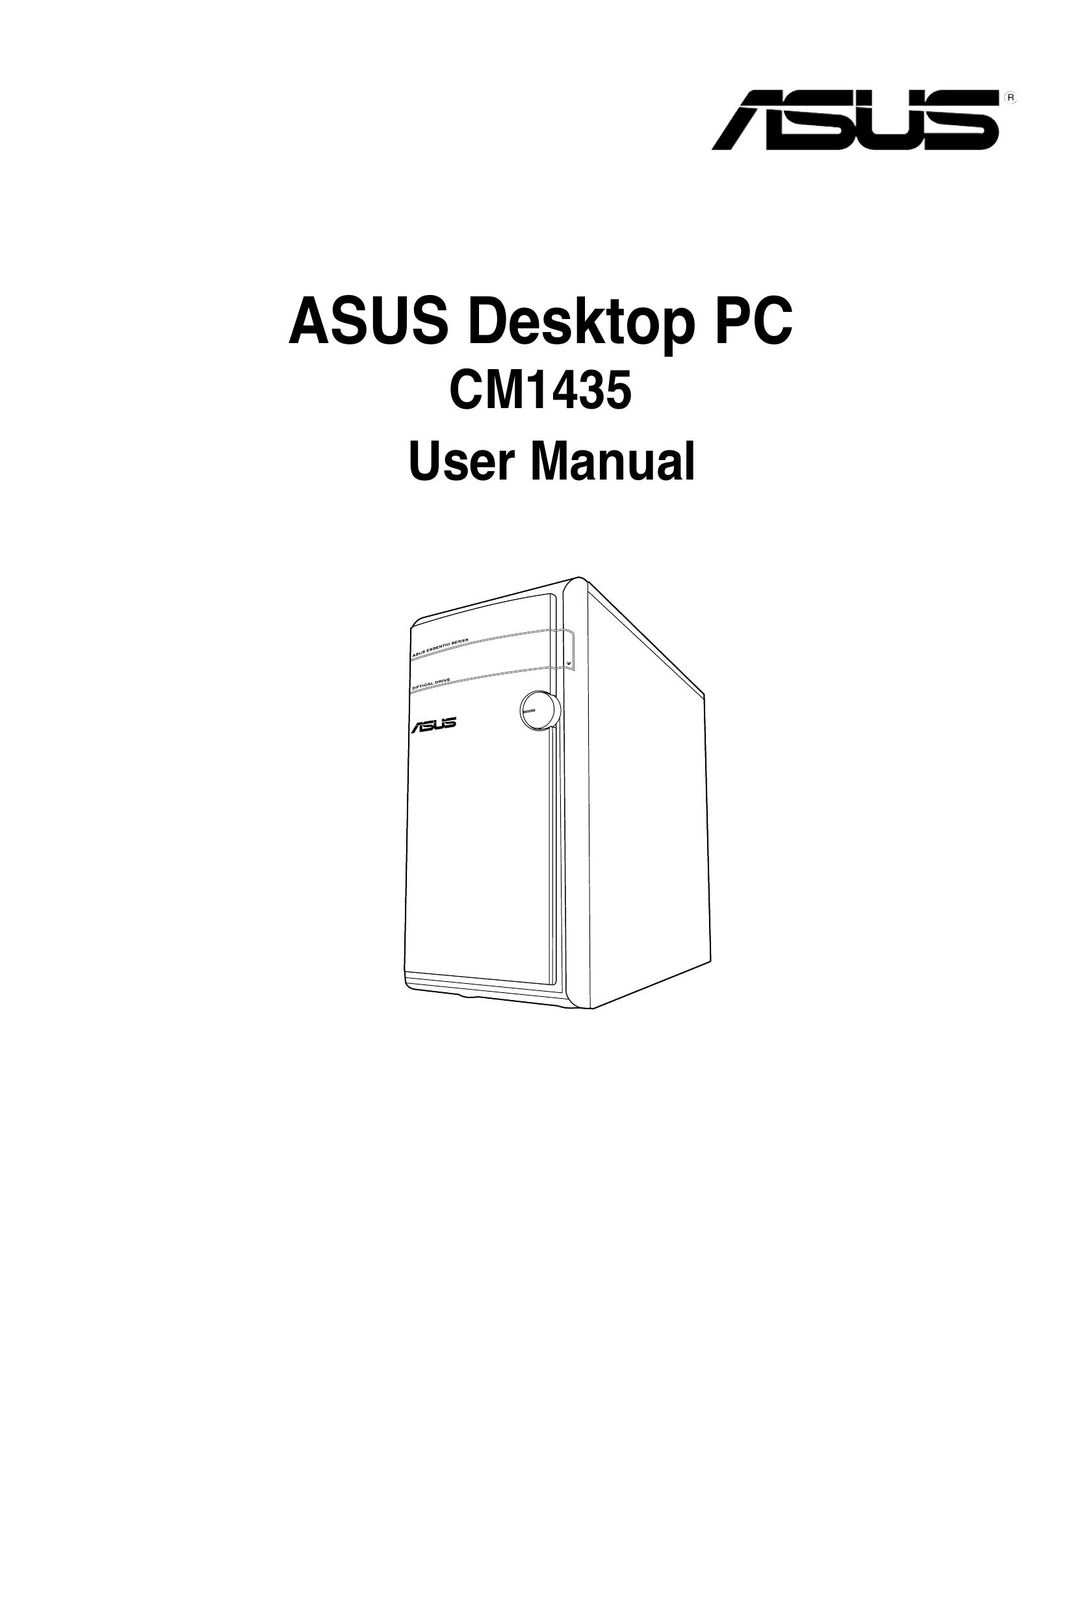 Asus CM1435 Personal Computer User Manual